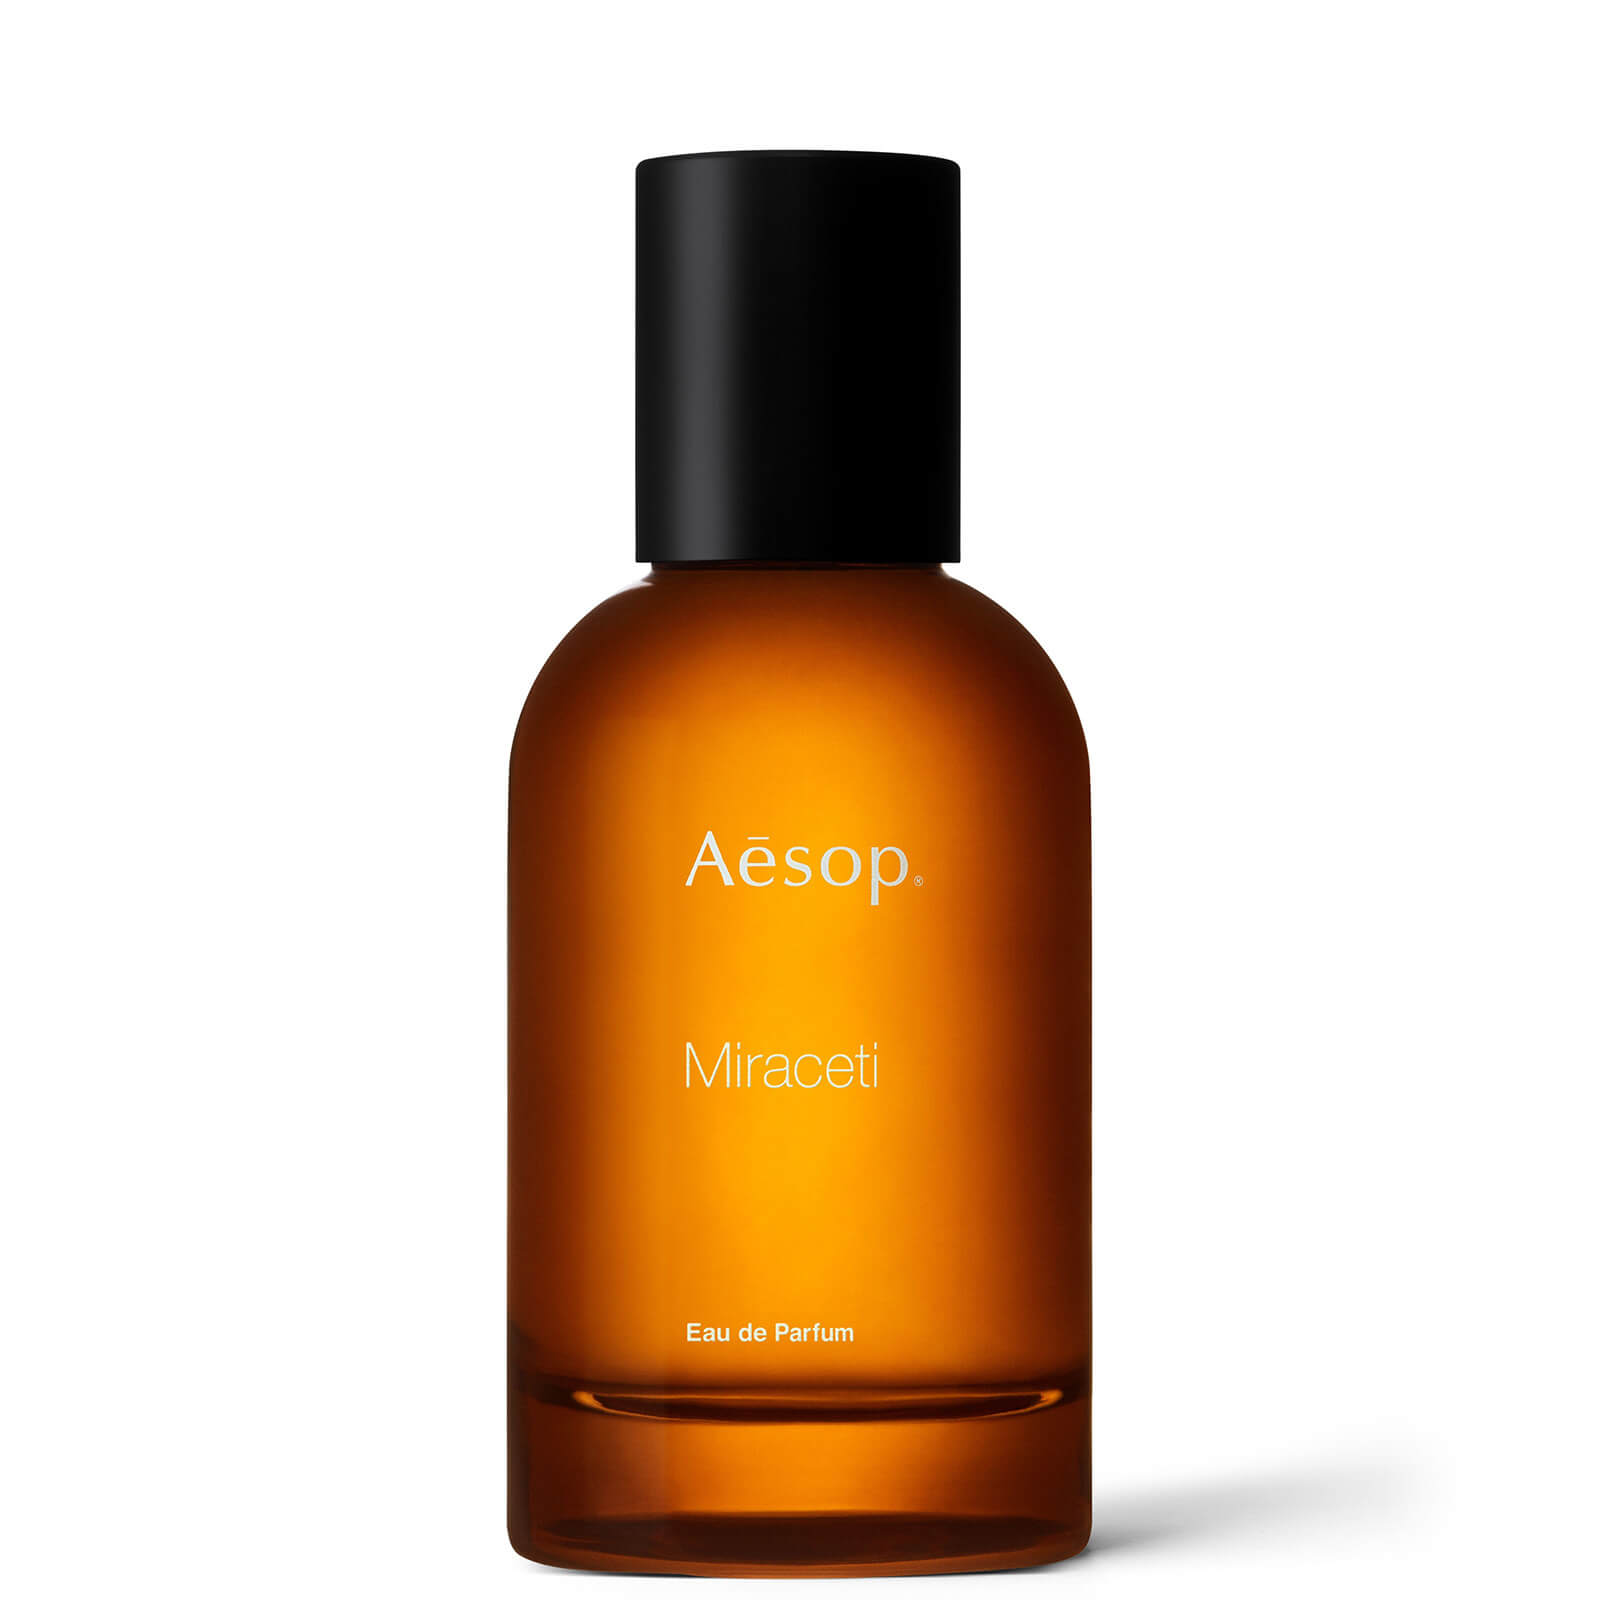 Image of Aesop Miraceti Eau de Parfum 50ml